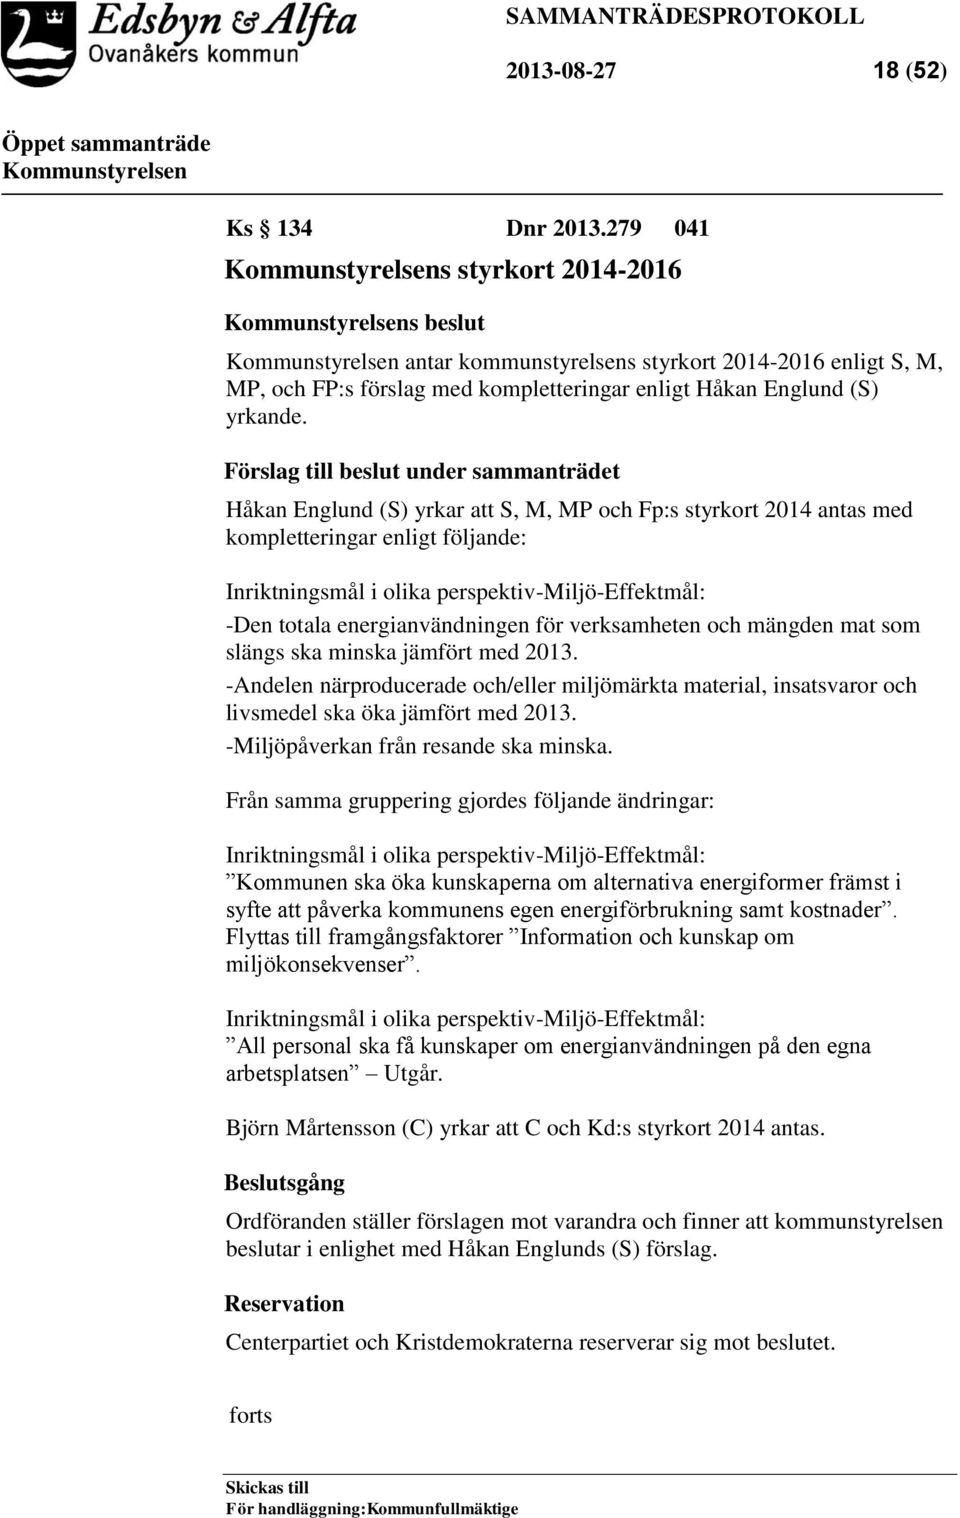 Förslag till beslut under sammanträdet Håkan Englund (S) yrkar att S, M, MP och Fp:s styrkort 2014 antas med kompletteringar enligt följande: Inriktningsmål i olika perspektiv-miljö-effektmål: -Den